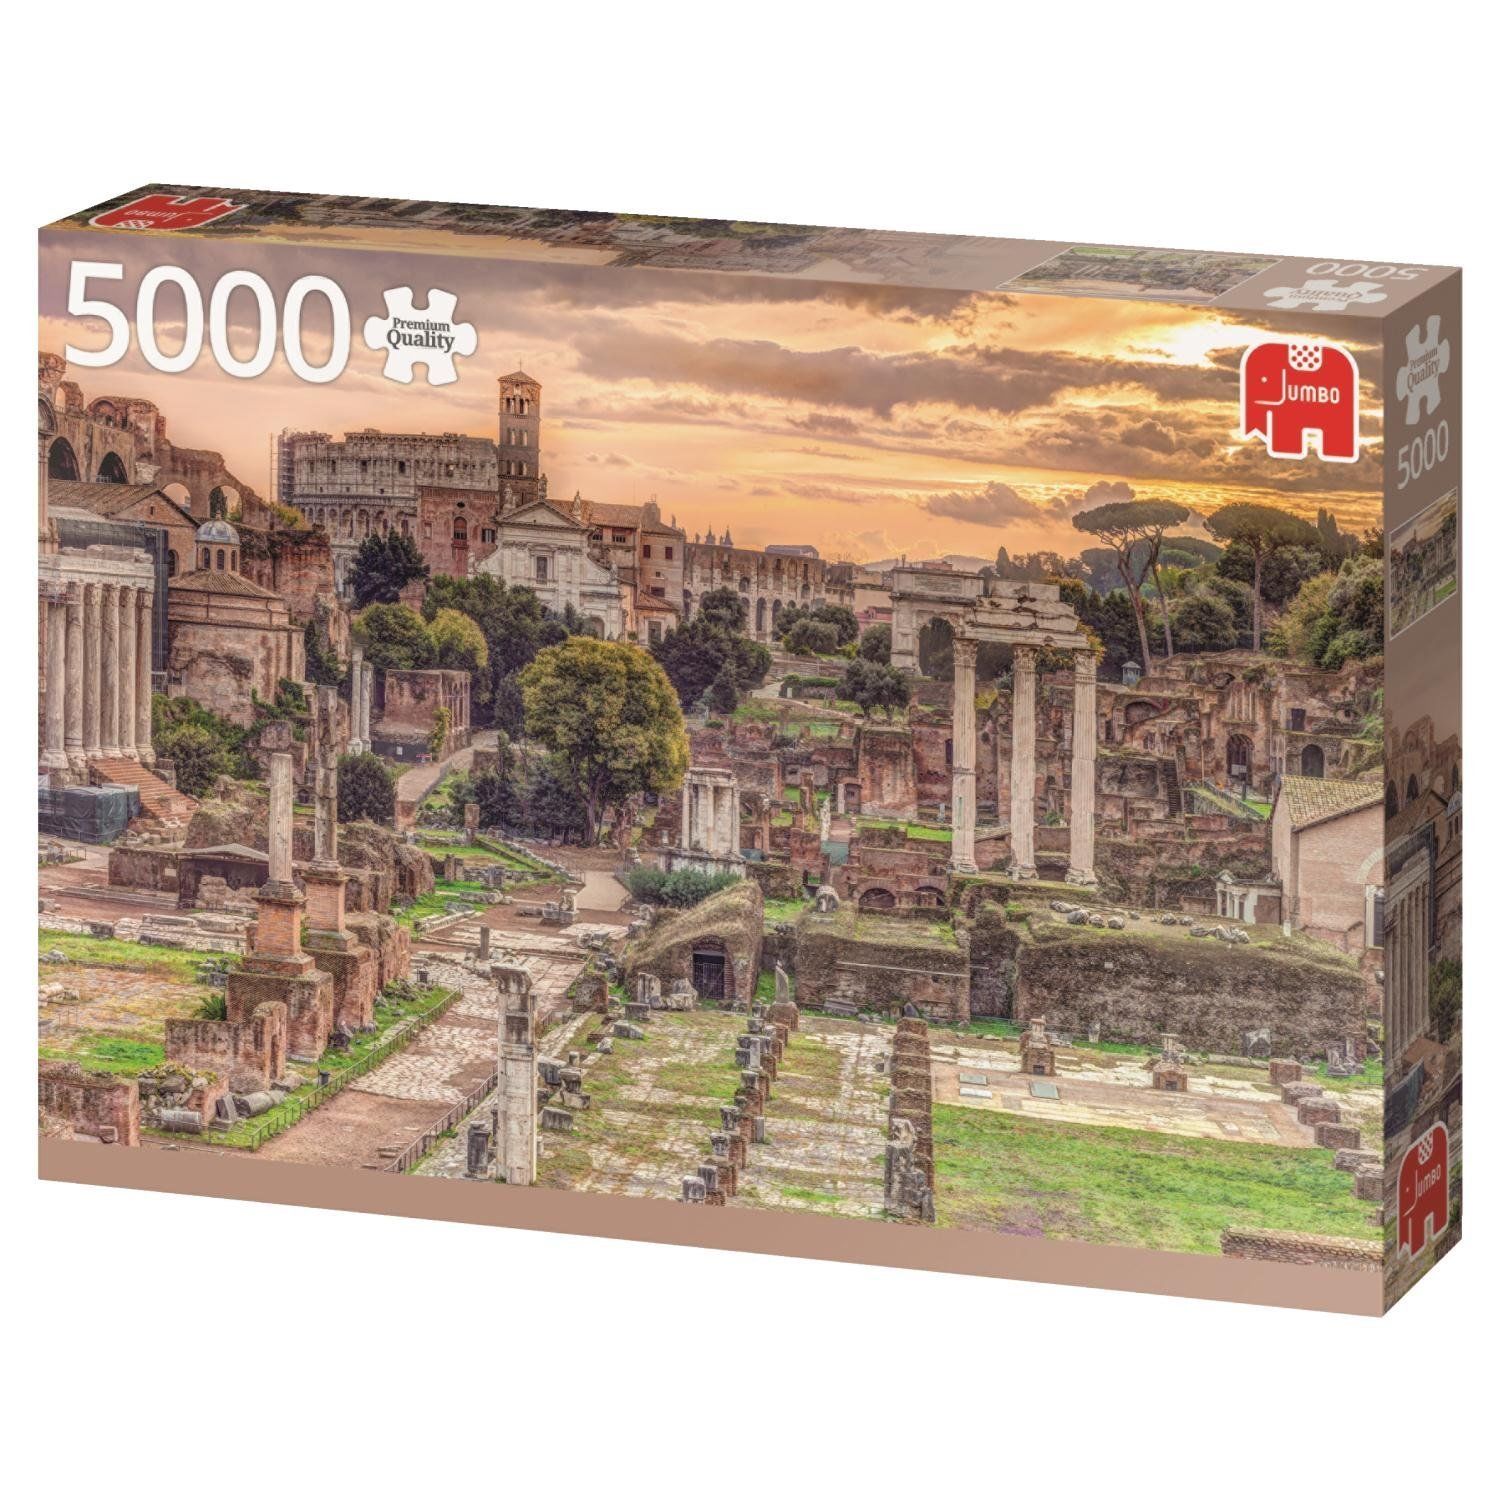 Forum Romanum, Rom 18592 Puzzle Jumbo 5000 Teile Premium Collection NEU OVP